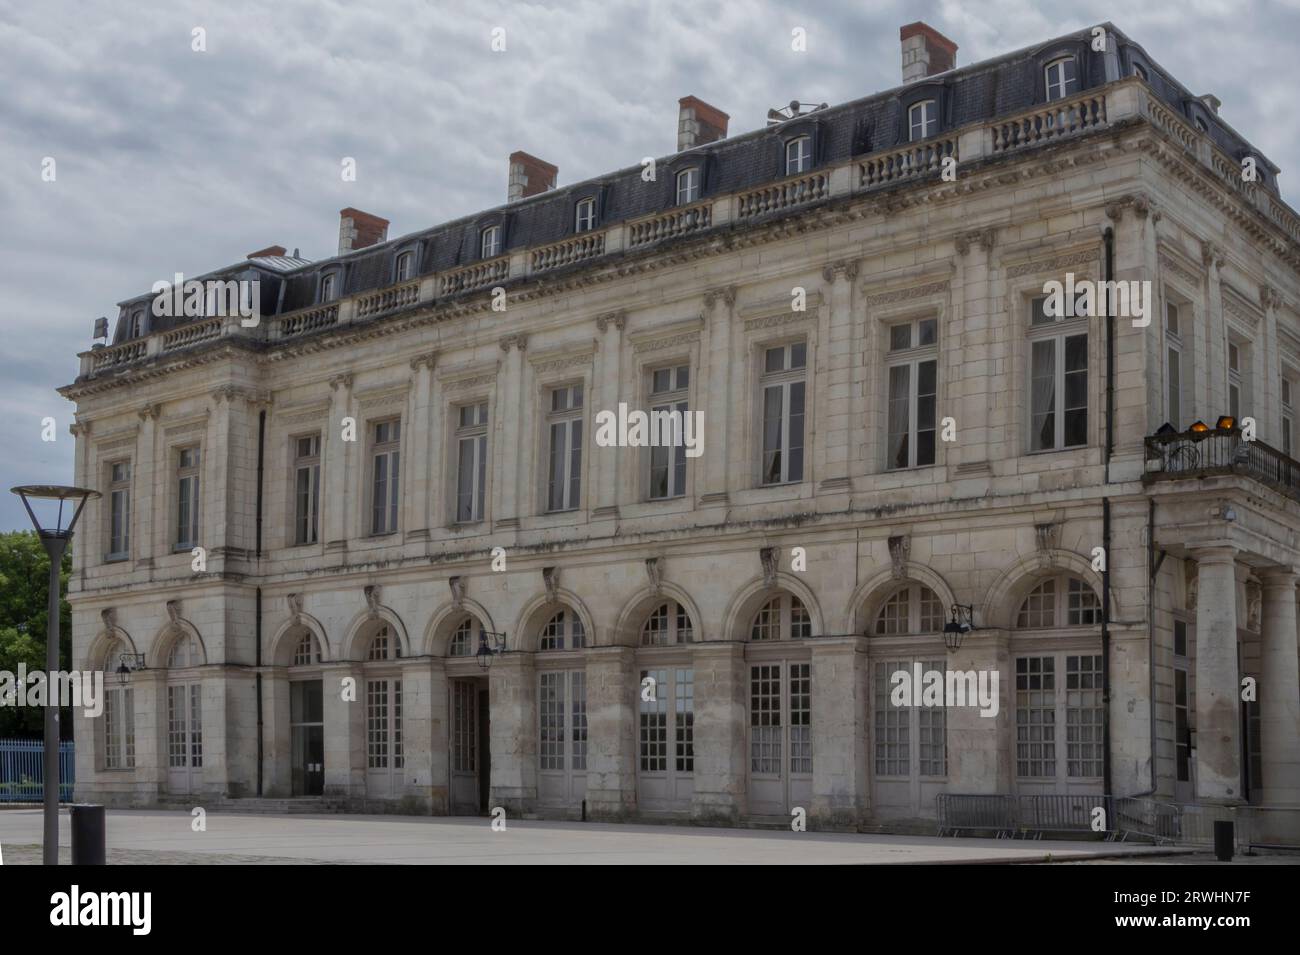 Grande edificio in stile francese fatto di pietra color crema su un'area pavimentata Foto Stock